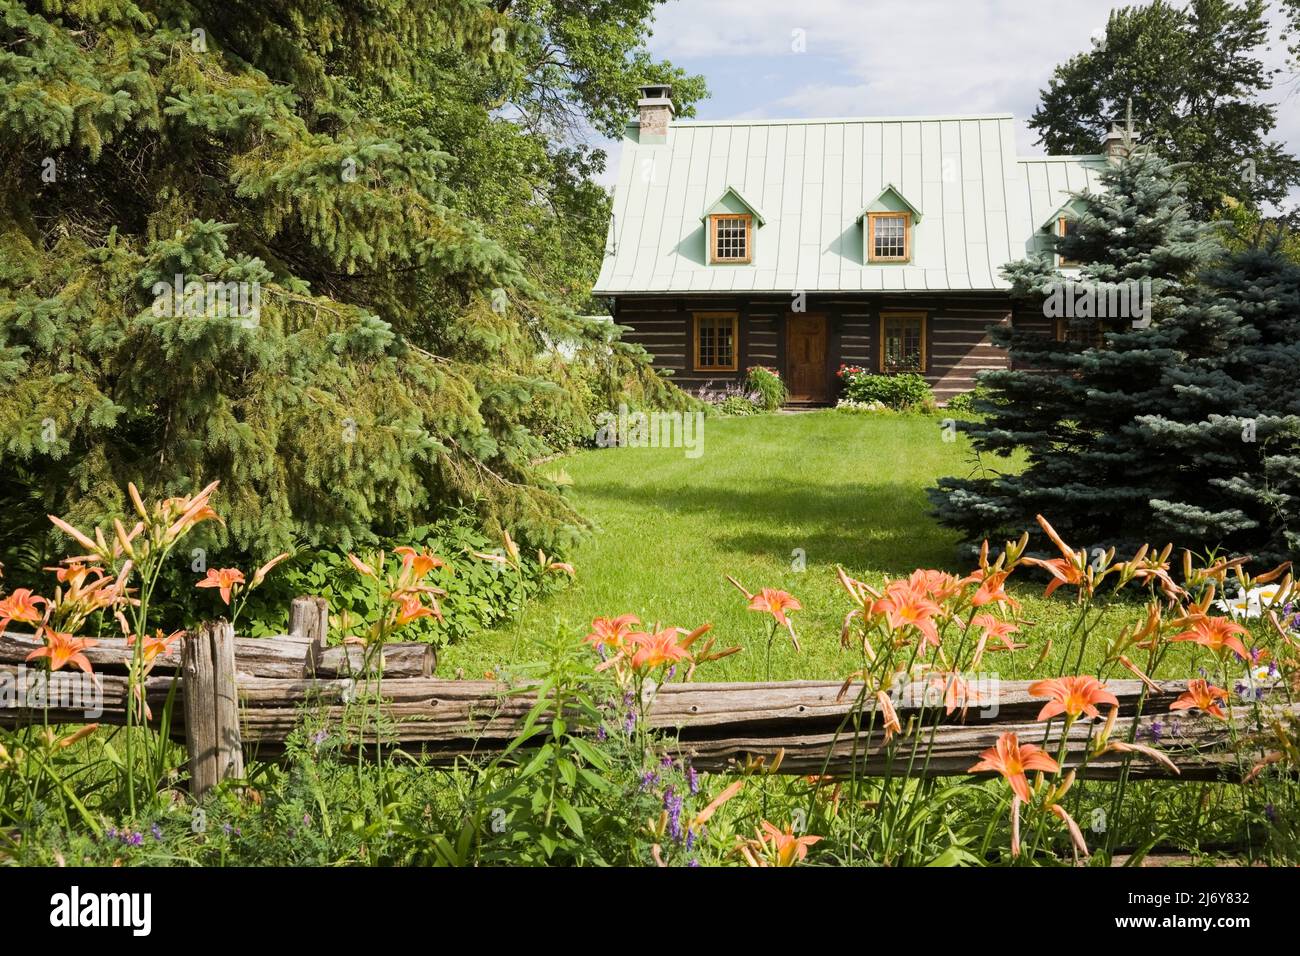 Vecchia casa di tronchi in stile Canadiana del 1800s con giardino paesaggistico protetto da recinzione rustica in legno. Foto Stock